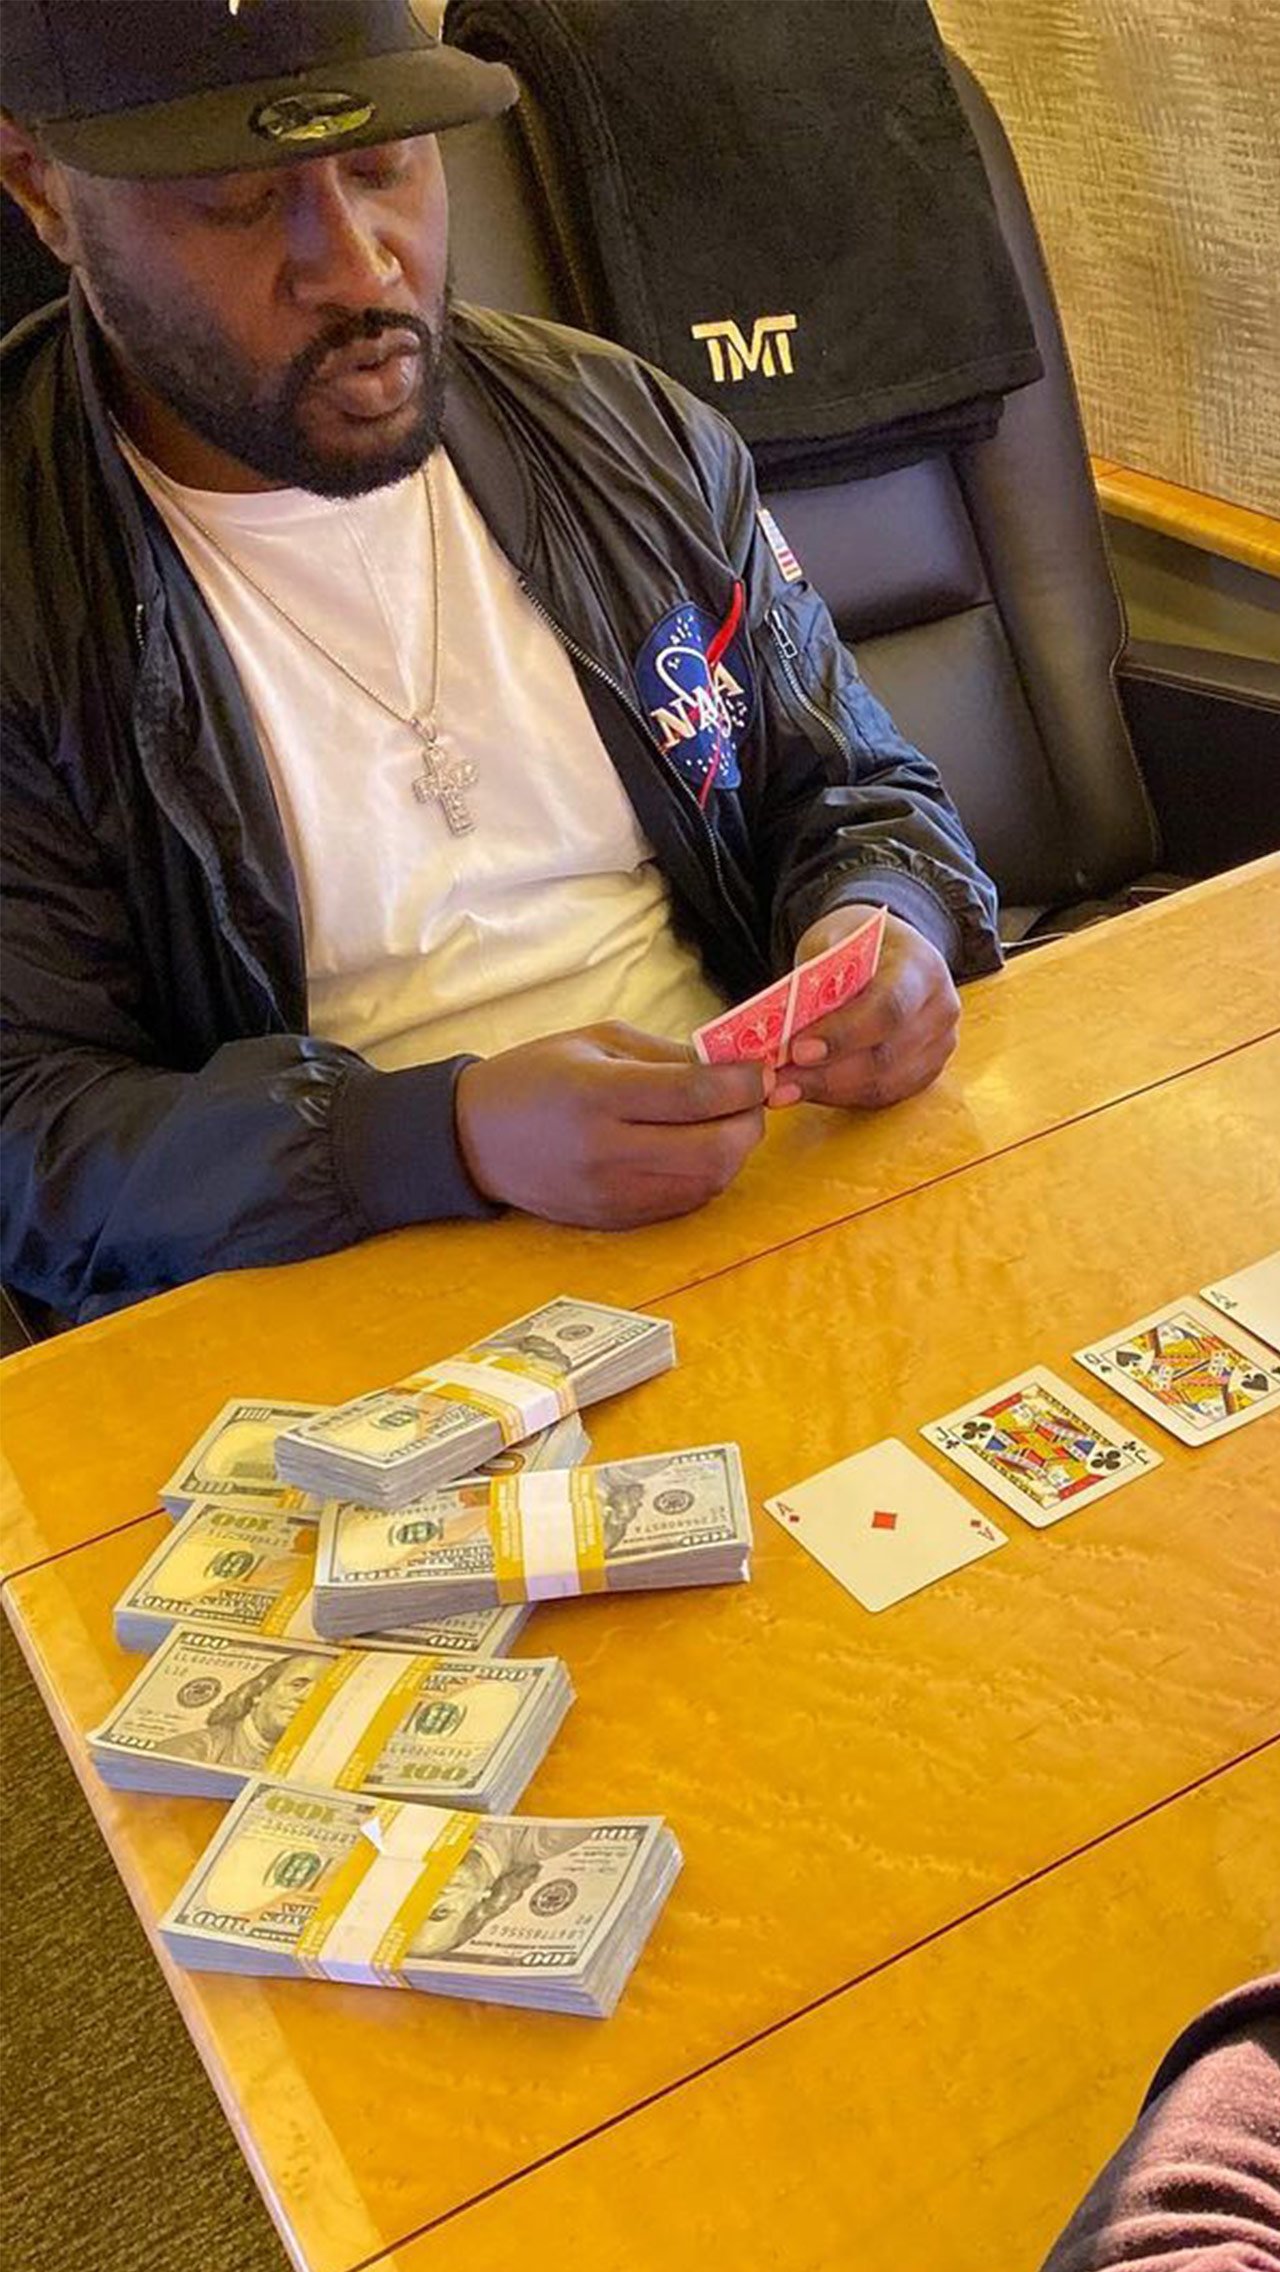 Флойд регулярно играет в покер с друзьями на самолёте. На столе лежат большие пачки денег, о чём боксёр не устаёт напоминать в своём «инстаграме».